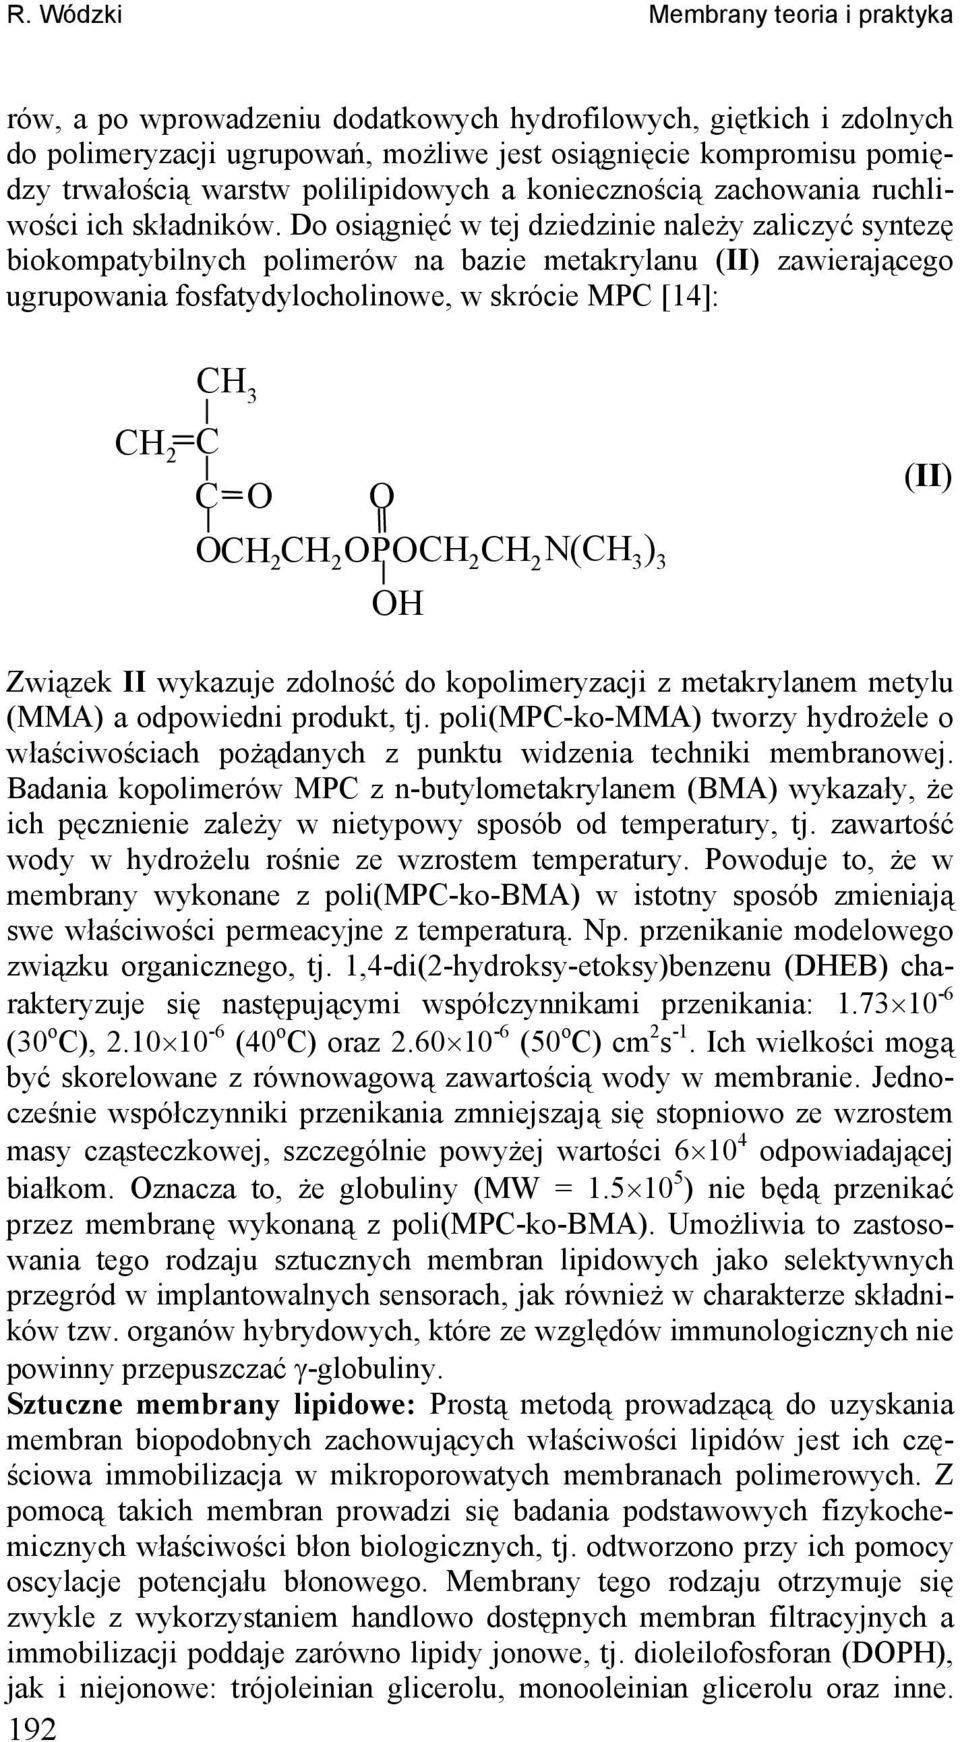 Do osiągięć w tej dziedziie ależy zaliczyć sytezę biokompatybilych polimerów a bazie metakrylau (II) zawierającego ugrupowaia fosfatydylocholiowe, w skrócie MP [14]: 2 3 2 2 P 2 2 ( 3 ) 3 (II)